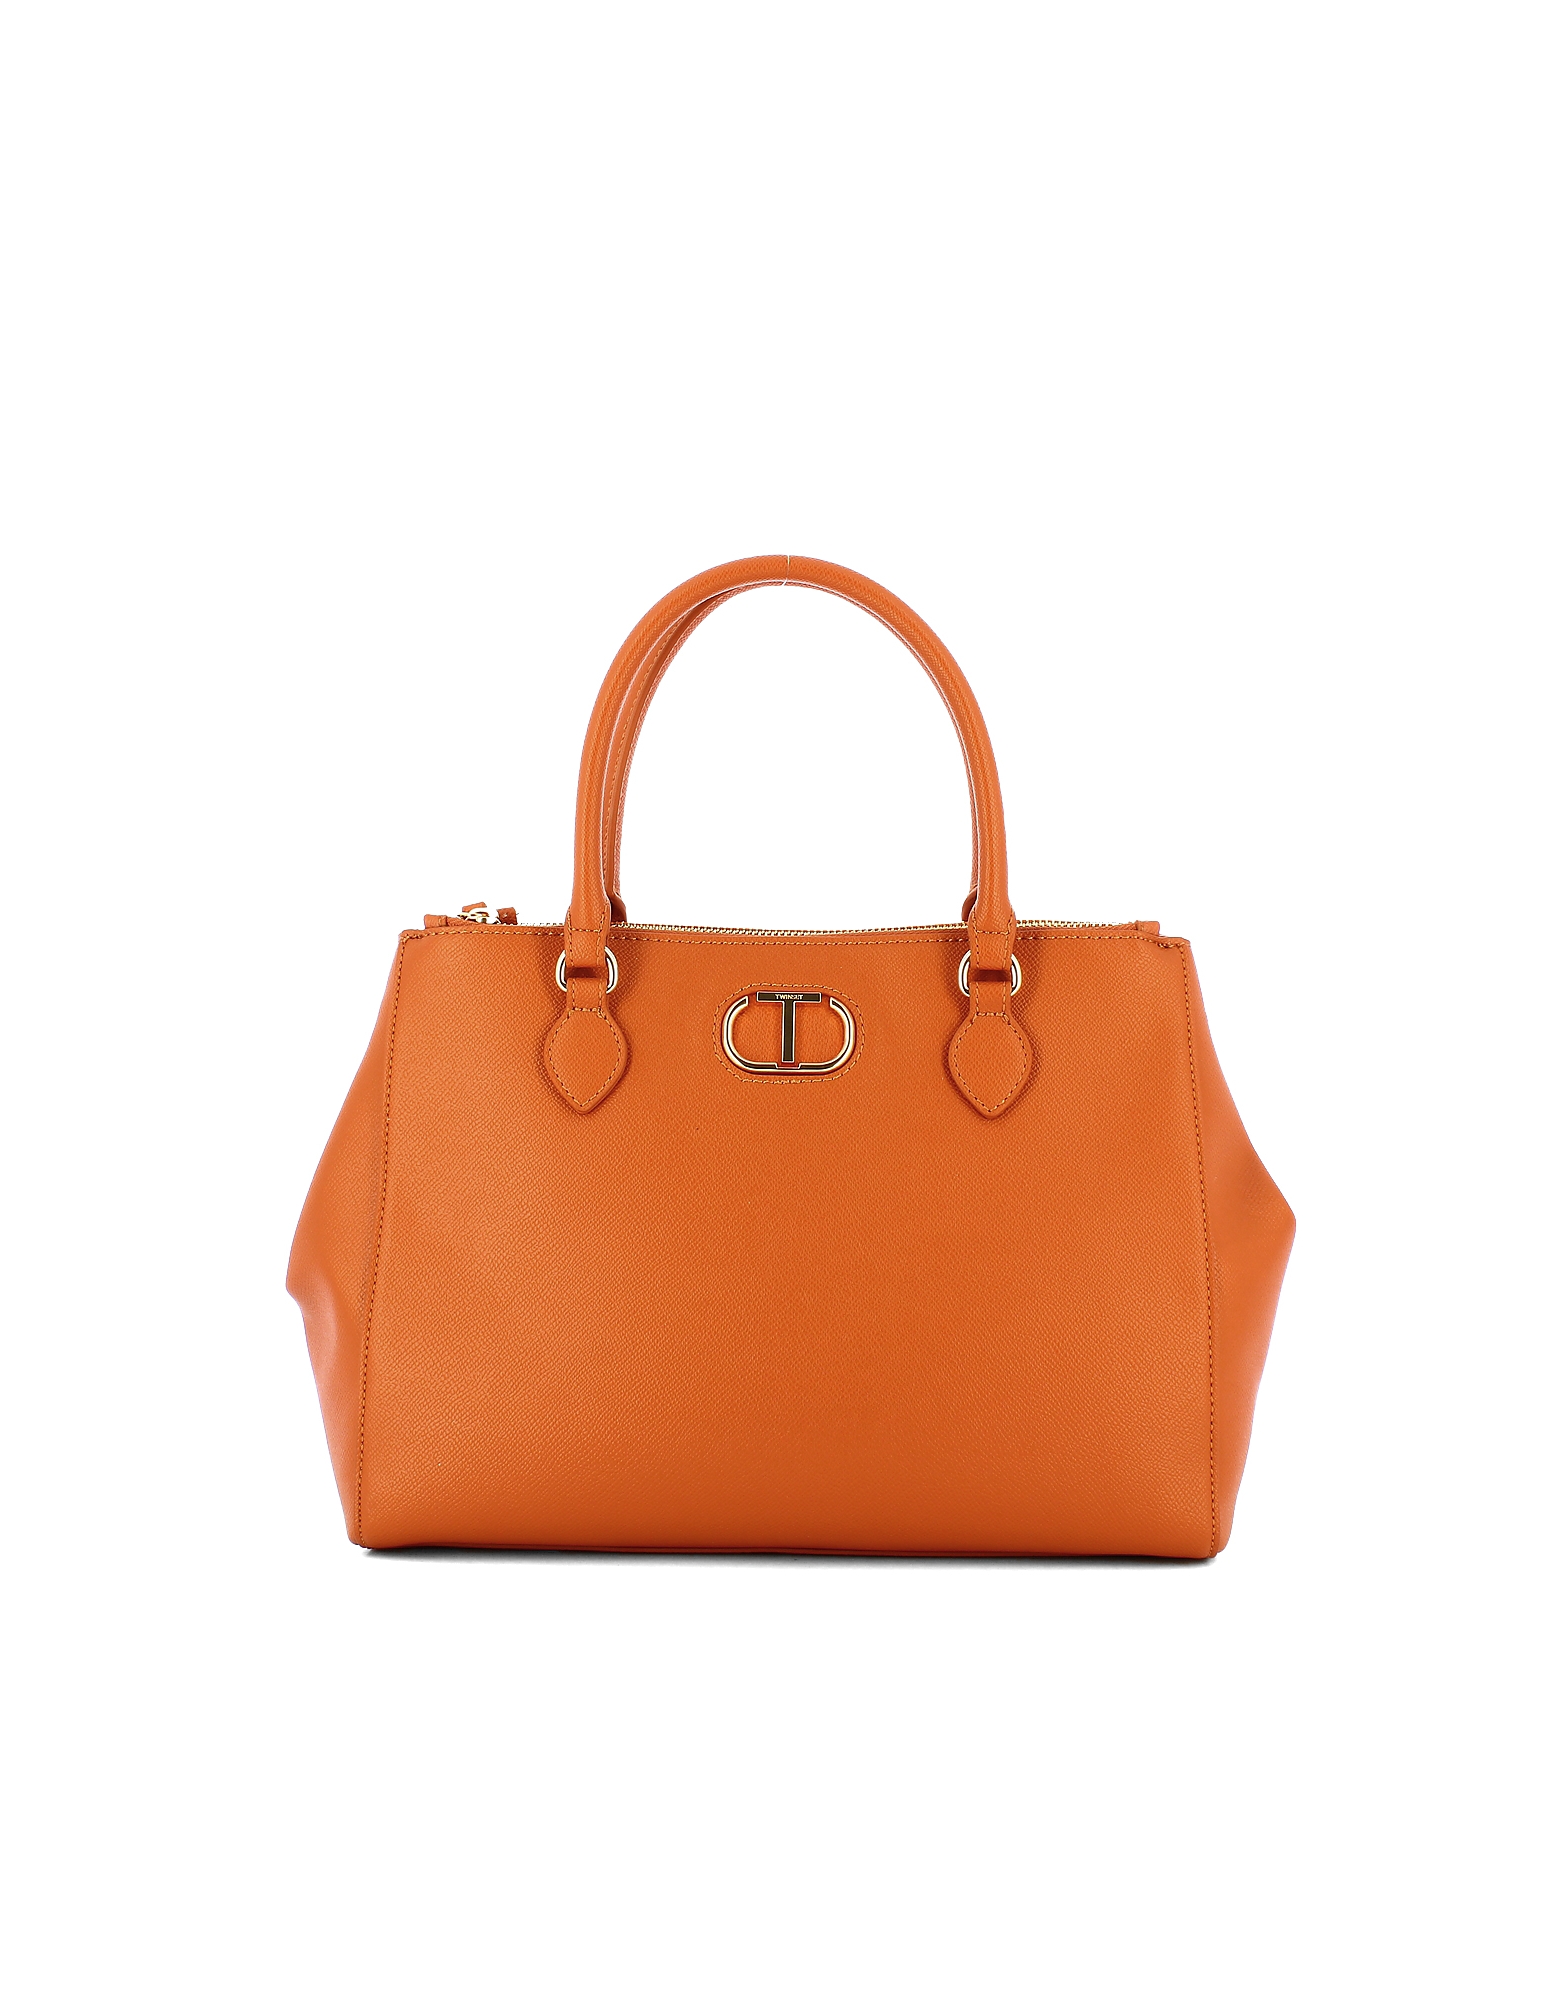 Twinset Designer Handbags Women's Bag In Orange